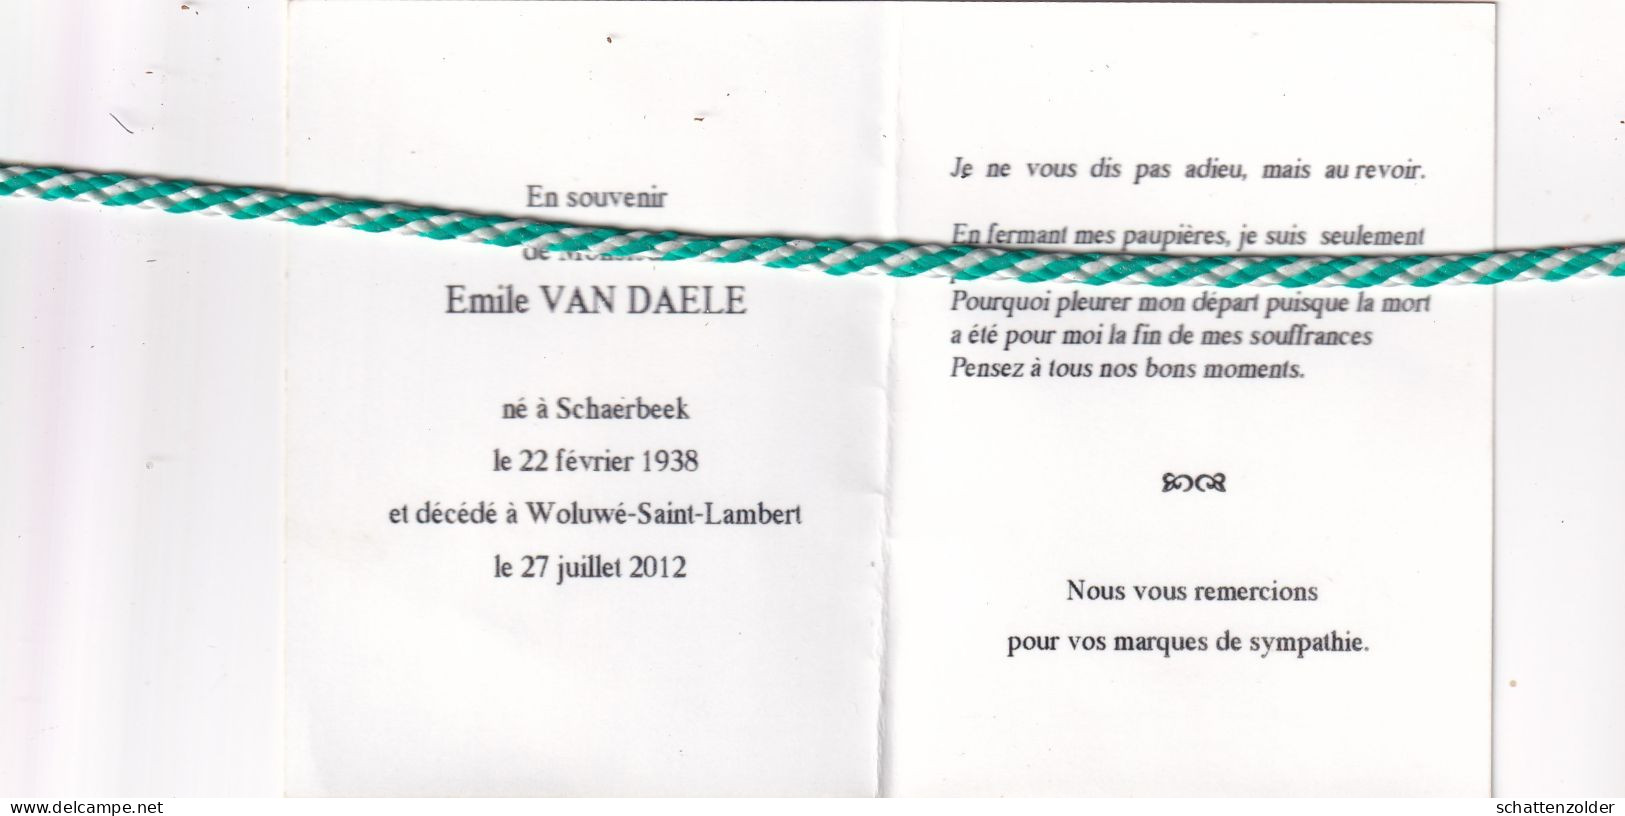 Emile Van Daele, Schaerbeek 1938, Woluwé-Saint-Lambert 2012. Foto Hond - Overlijden